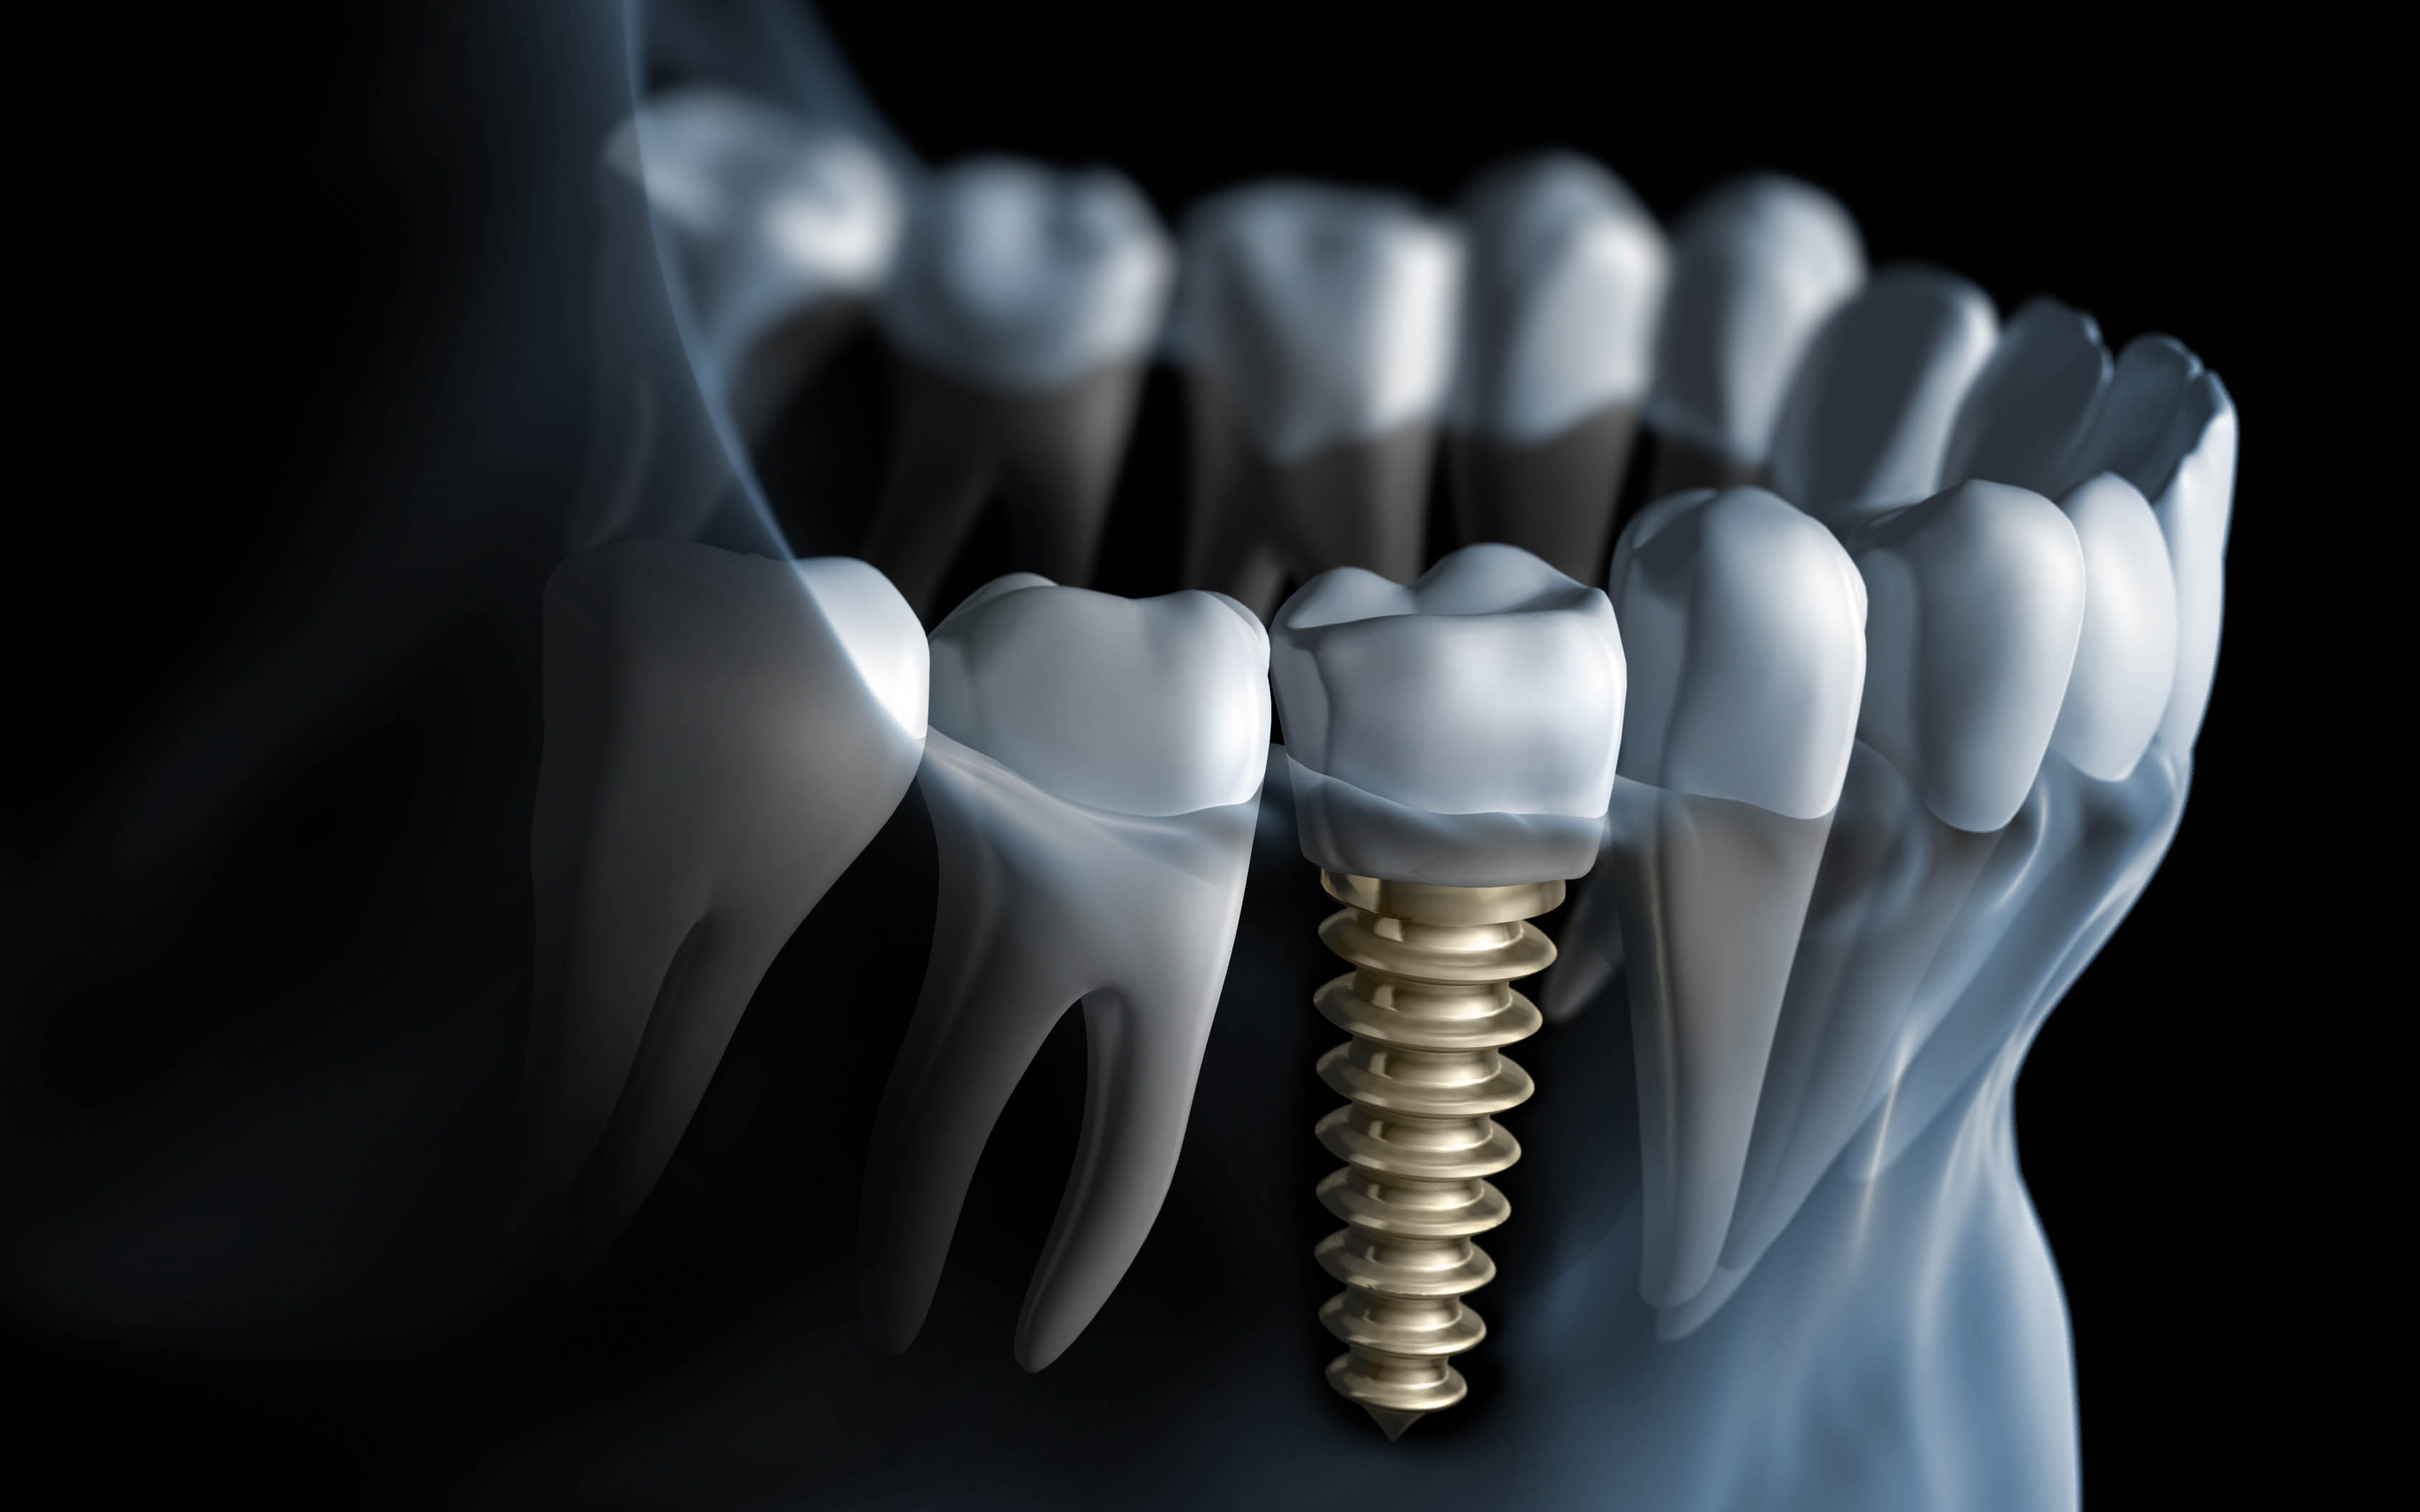 Avantajele implanturilor dentare